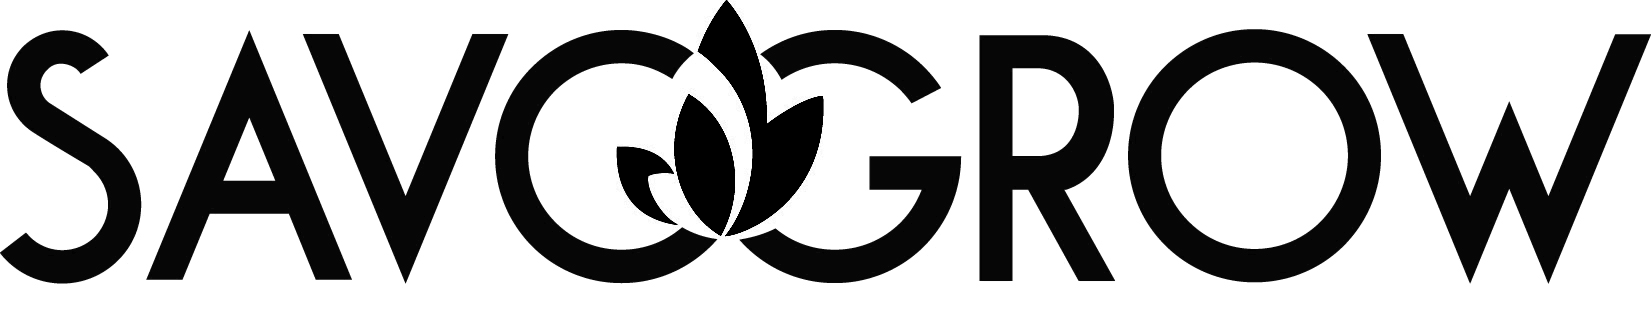 SavoGrow logo